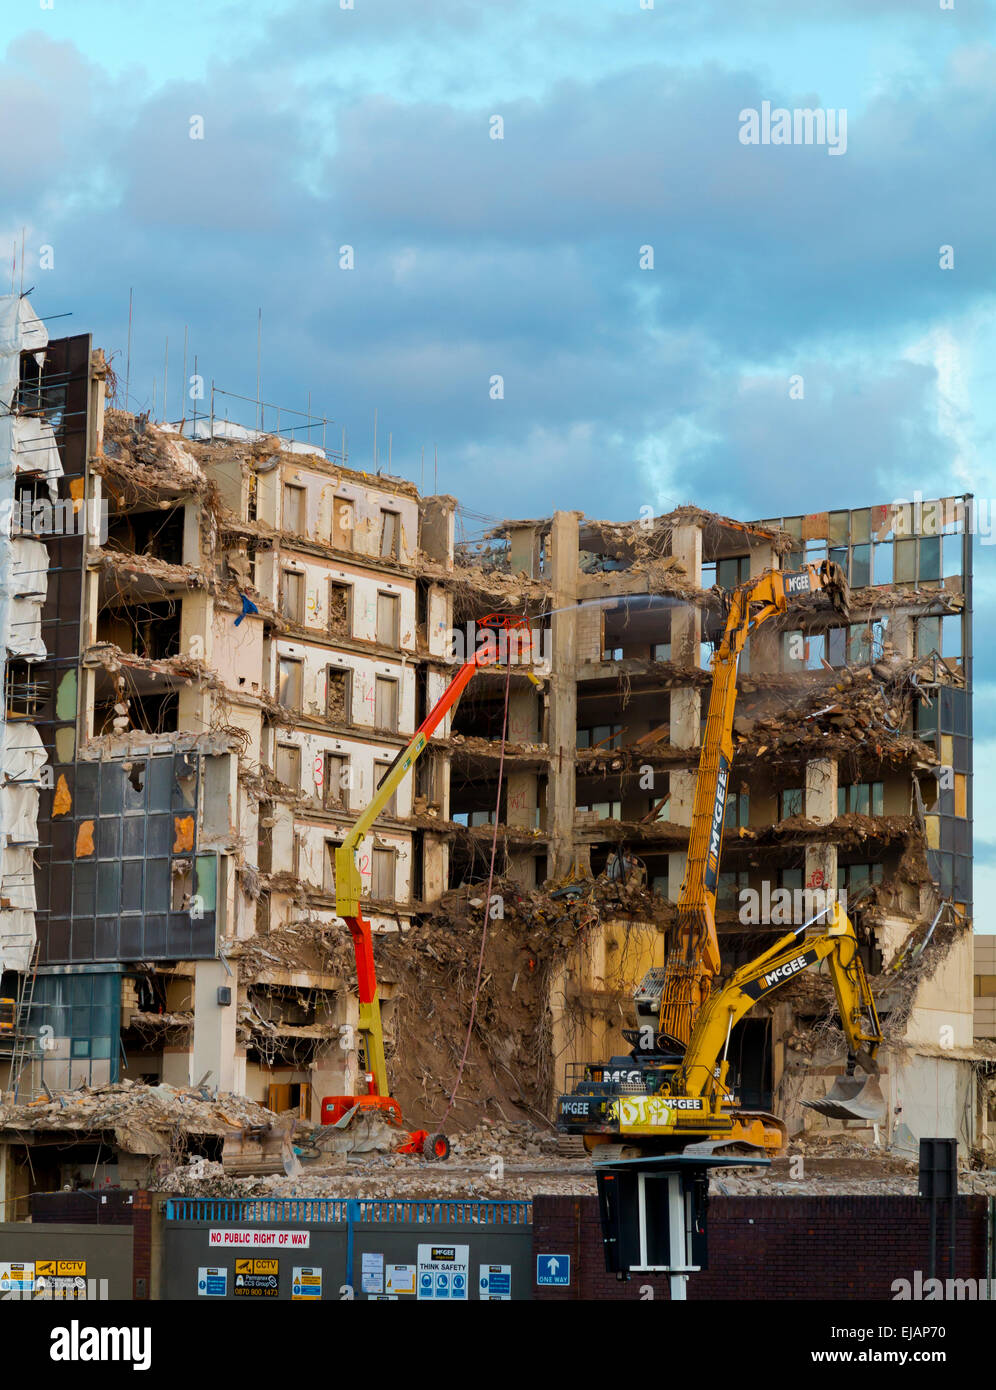 Diggers démolir un bâtiment dans le sud de Londres Angleterre Royaume-uni Vauxhall dans le cadre du réaménagement de la zone Banque D'Images